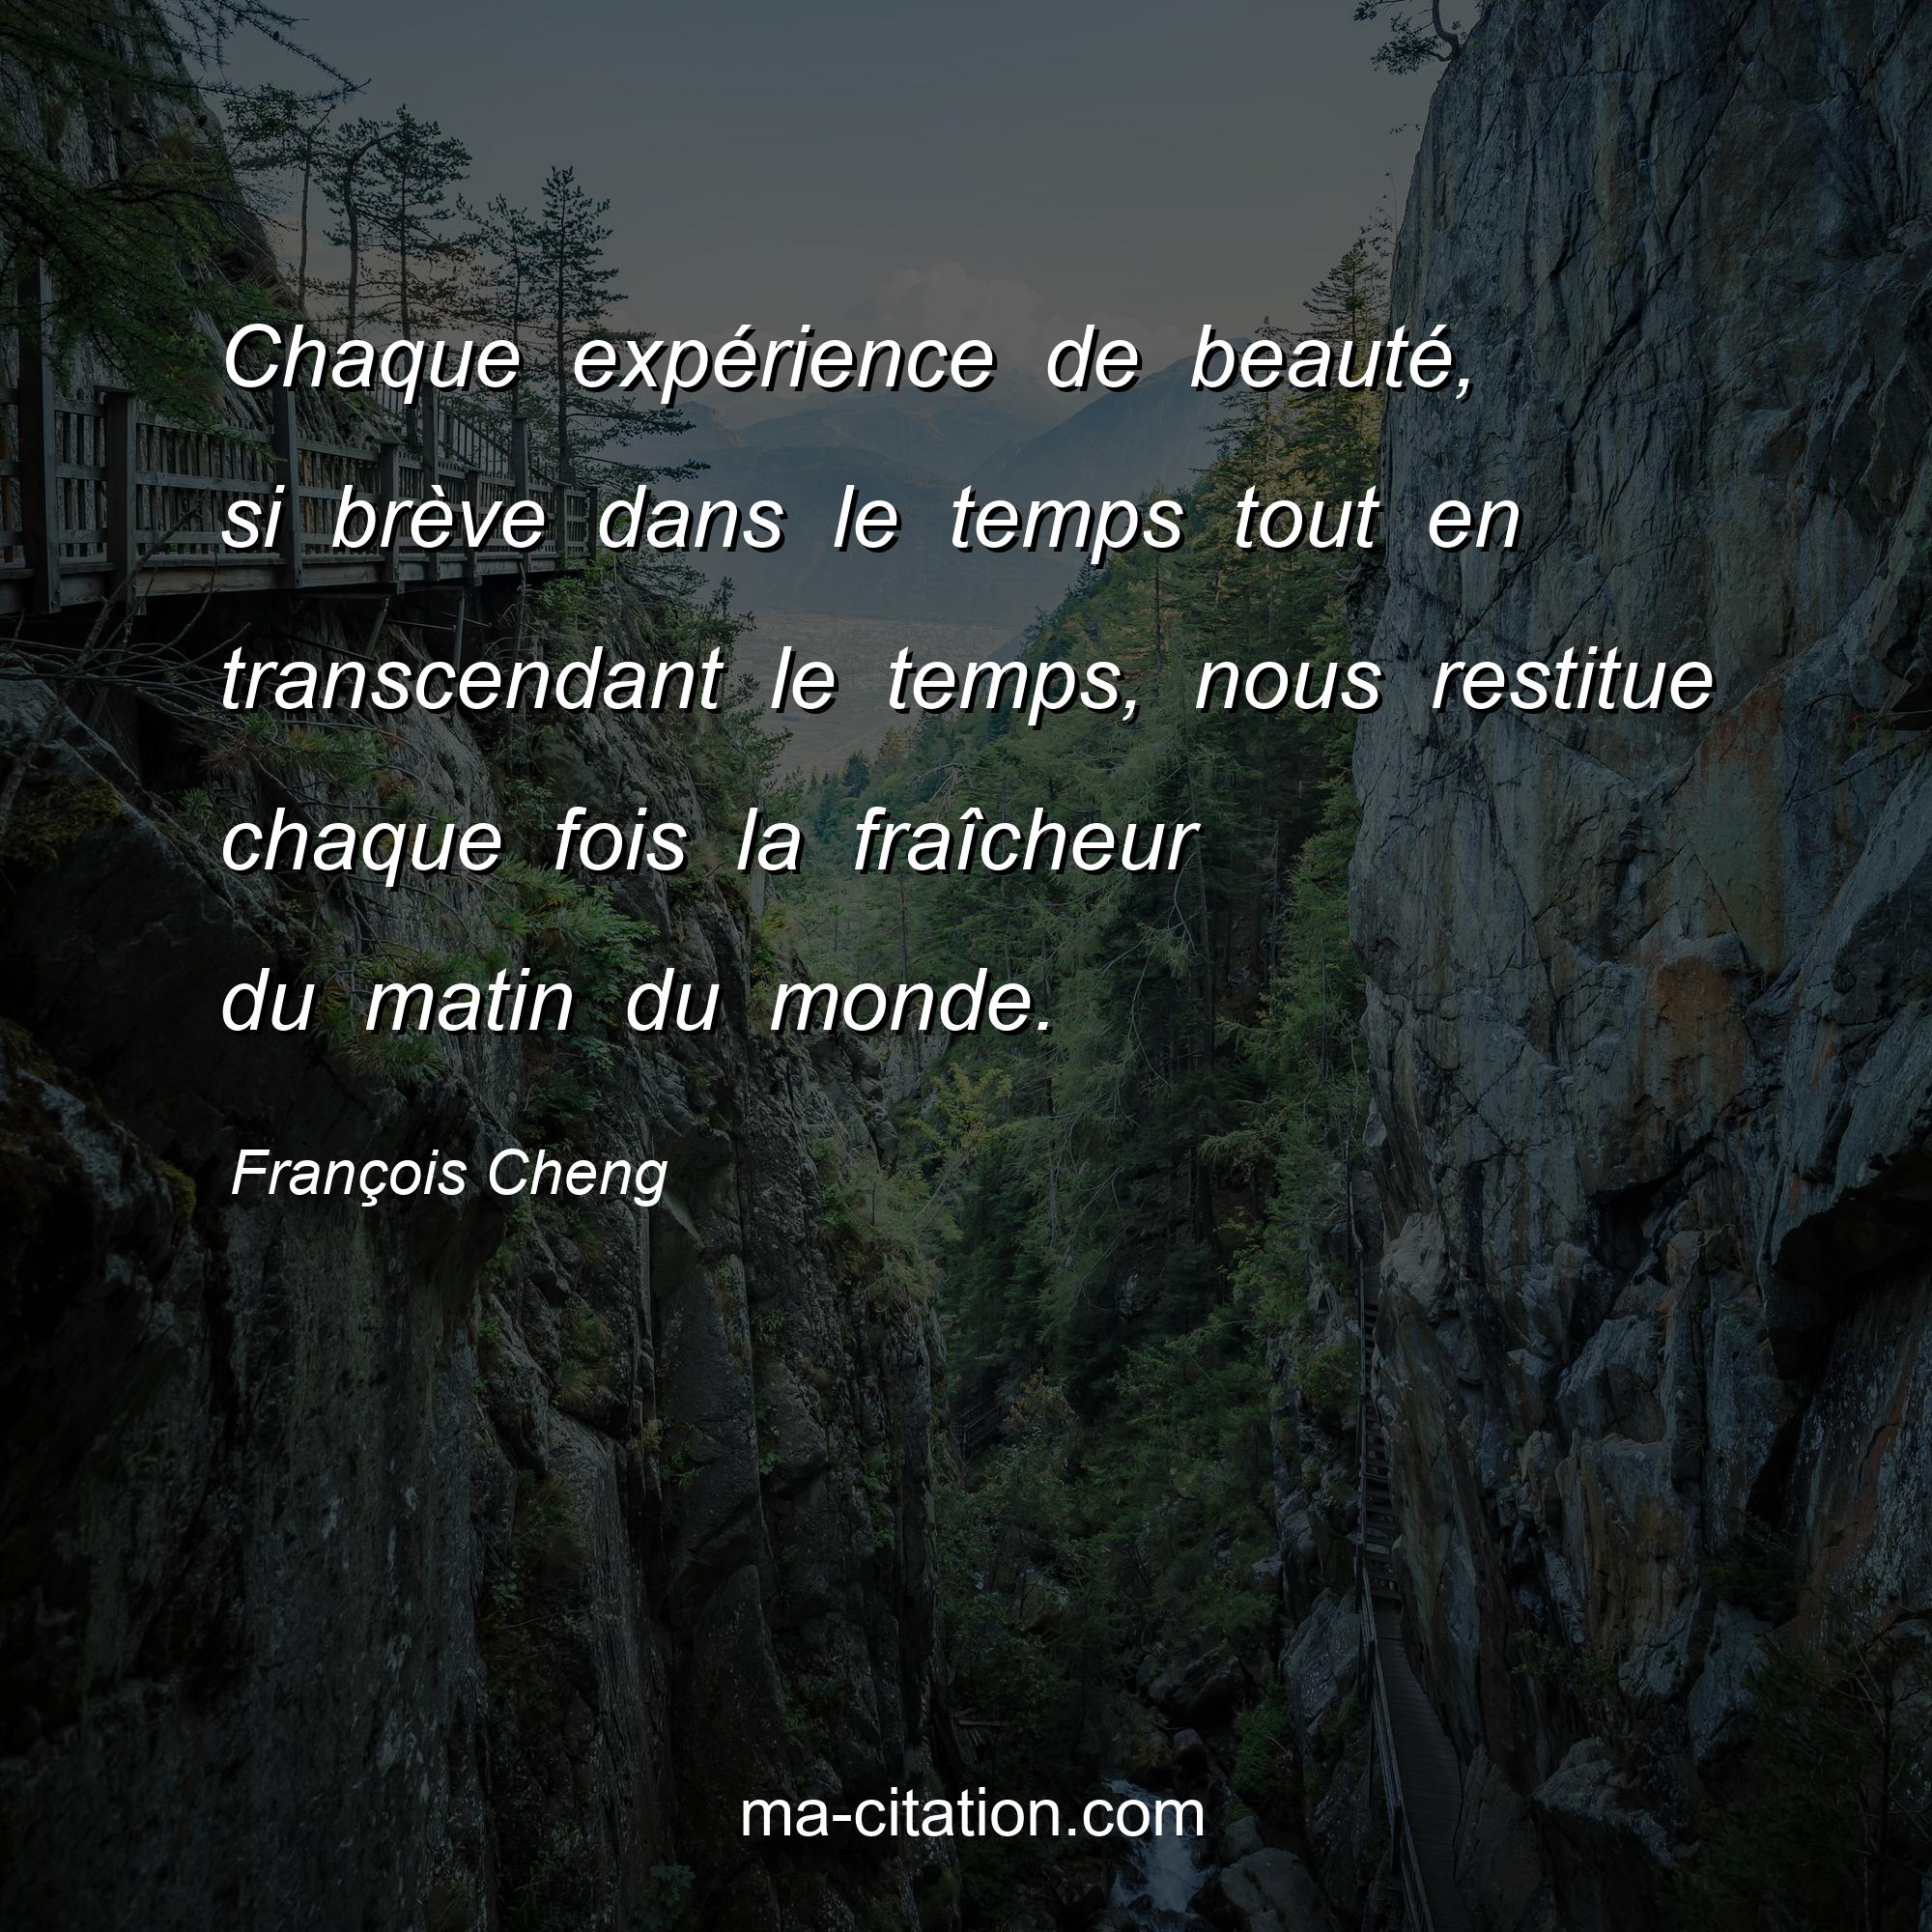 François Cheng : Chaque expérience de beauté, si brève dans le temps tout en transcendant le temps, nous restitue chaque fois la fraîcheur du matin du monde.